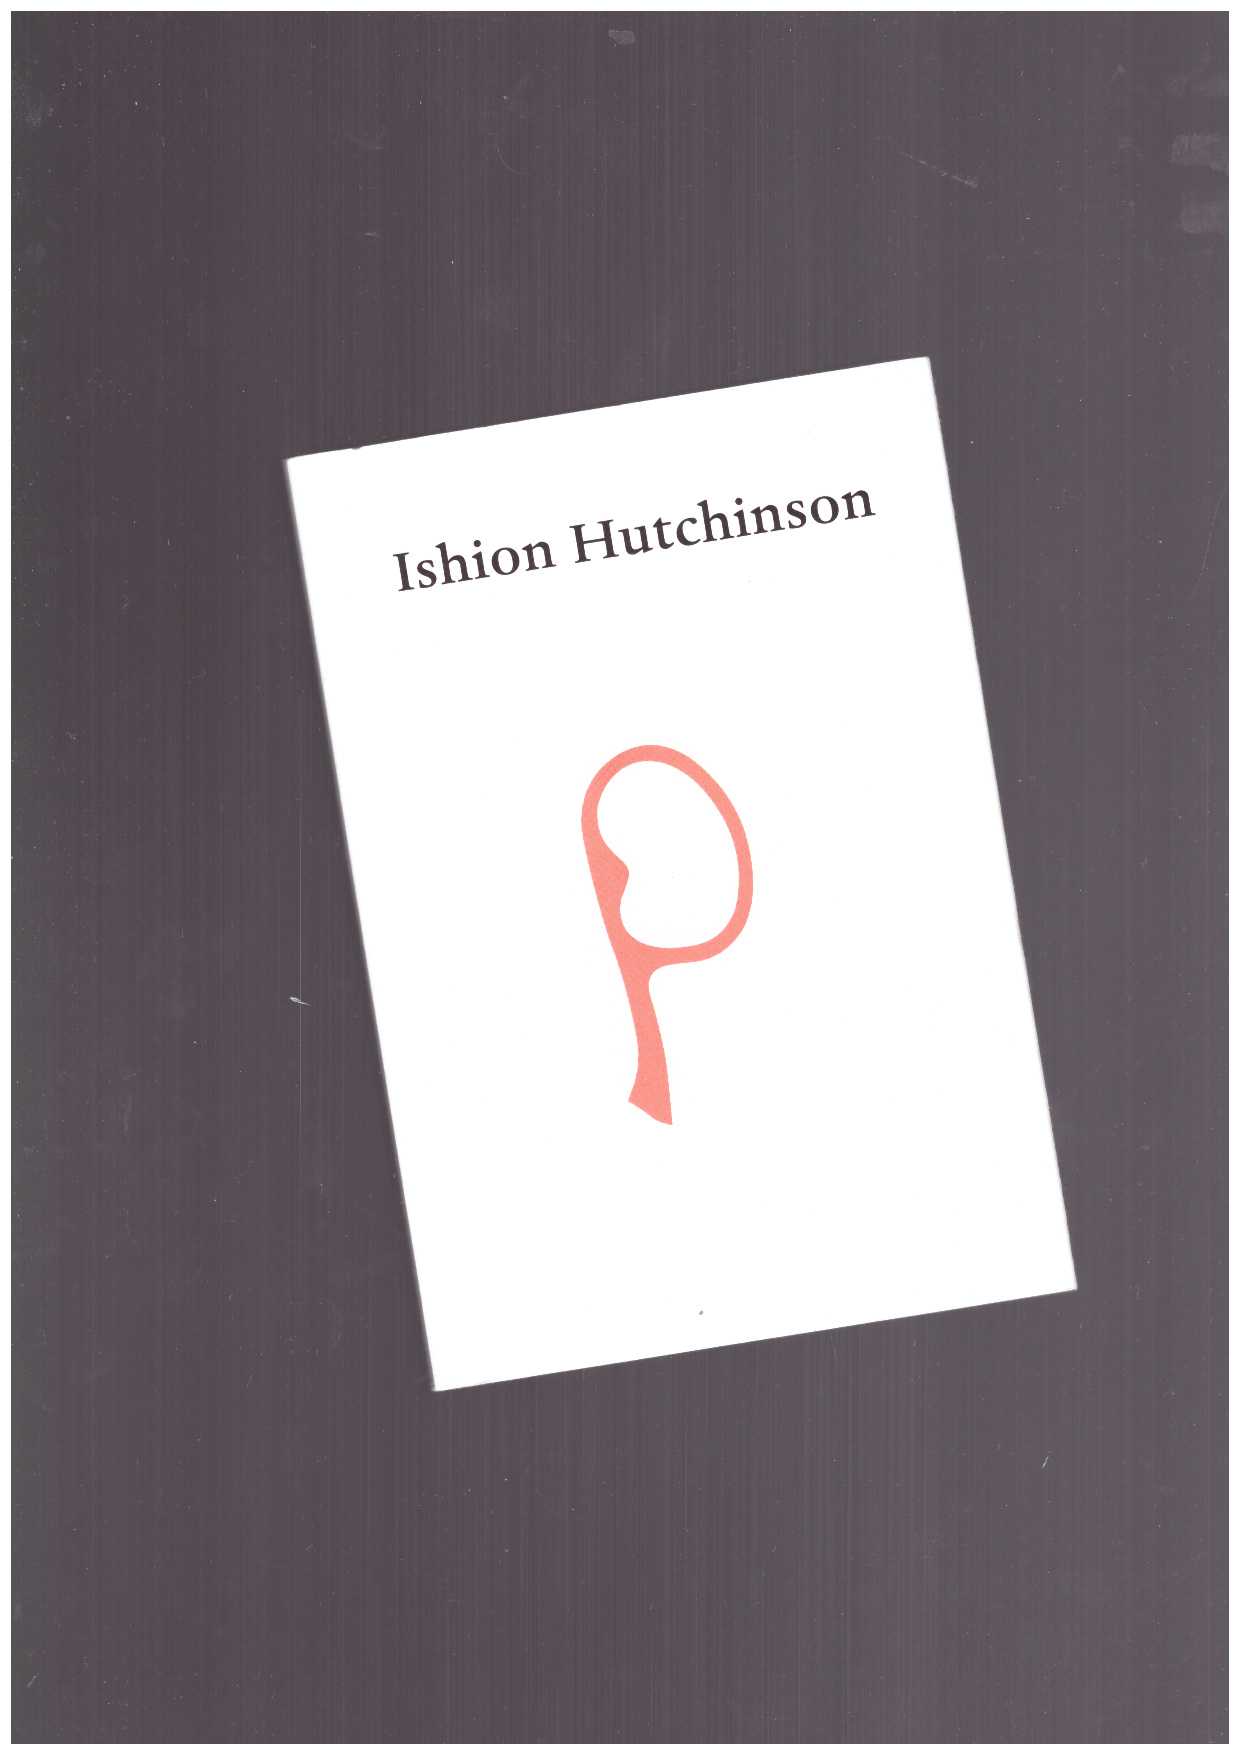 HUTCHINSON, Ishion - Ishion Hutchinson